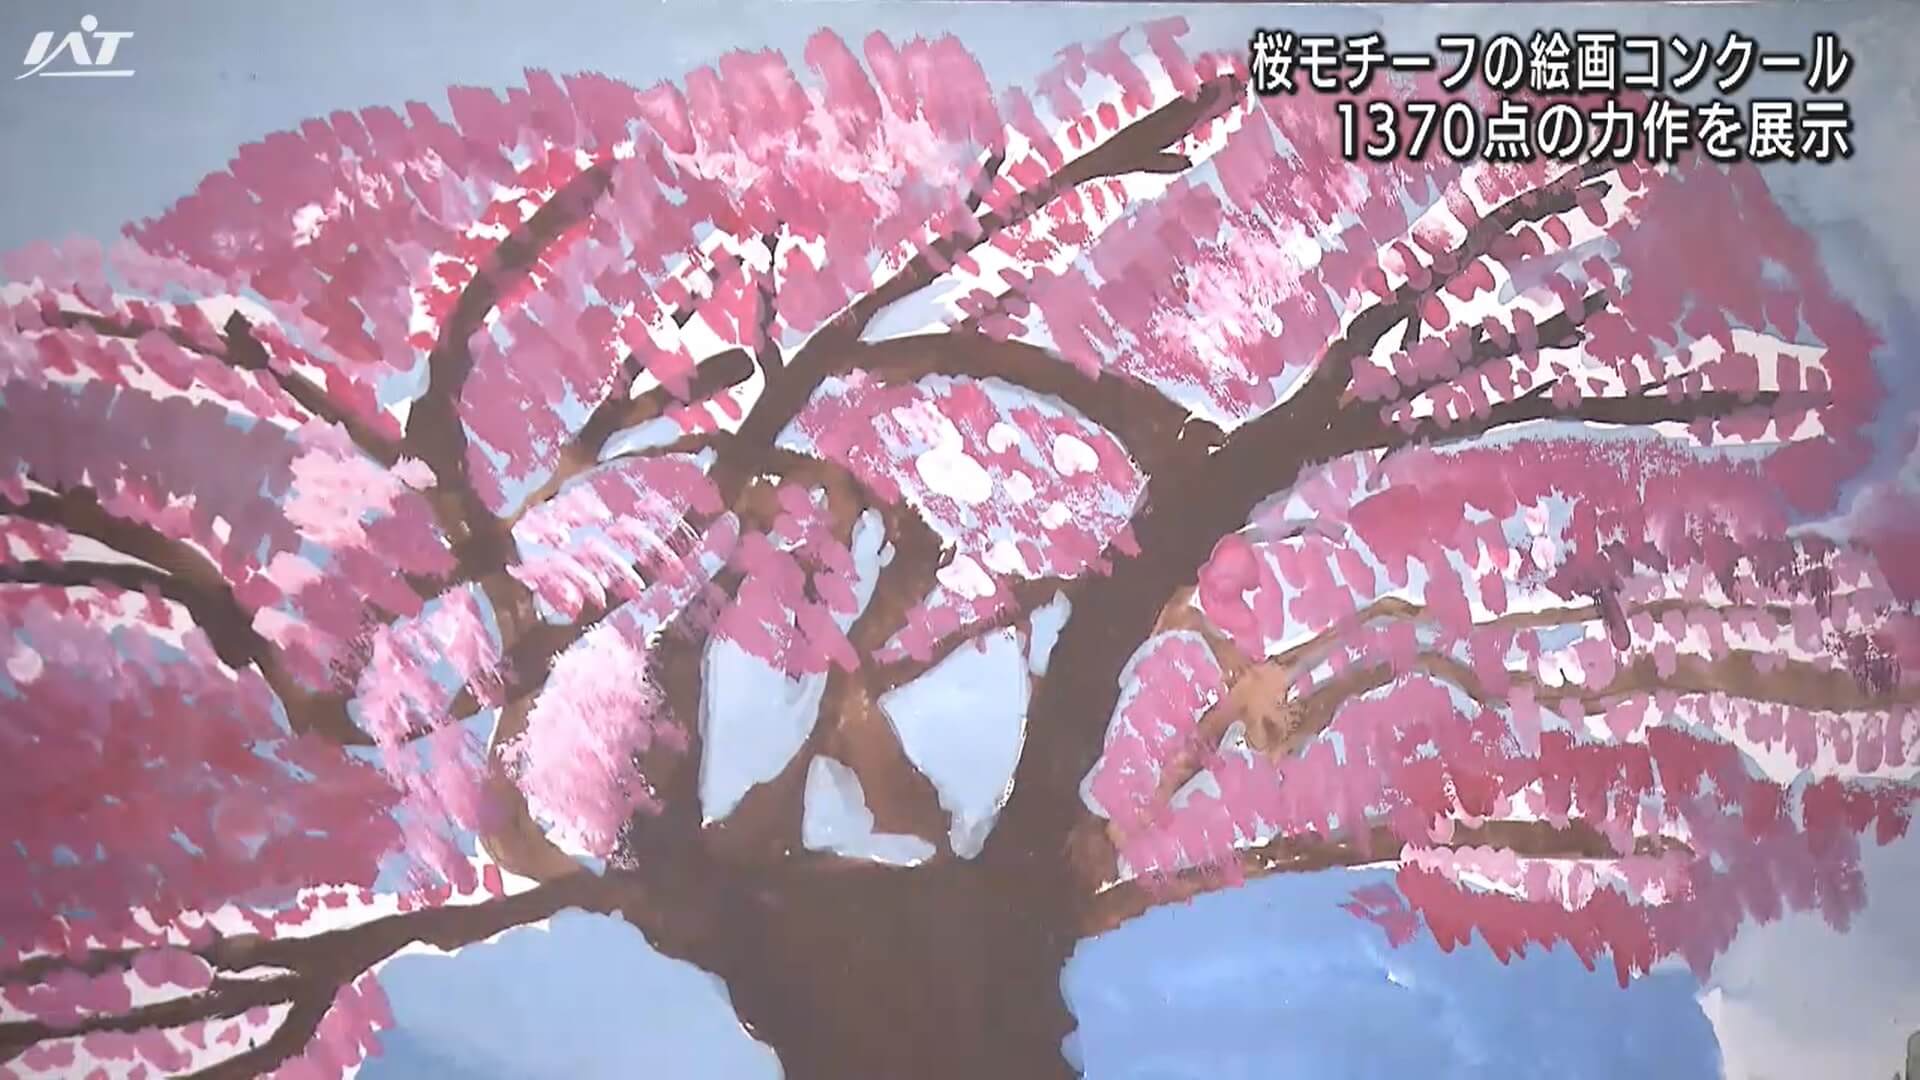 桜の礼所・絵画コンクール作品展【岩手・盛岡市】